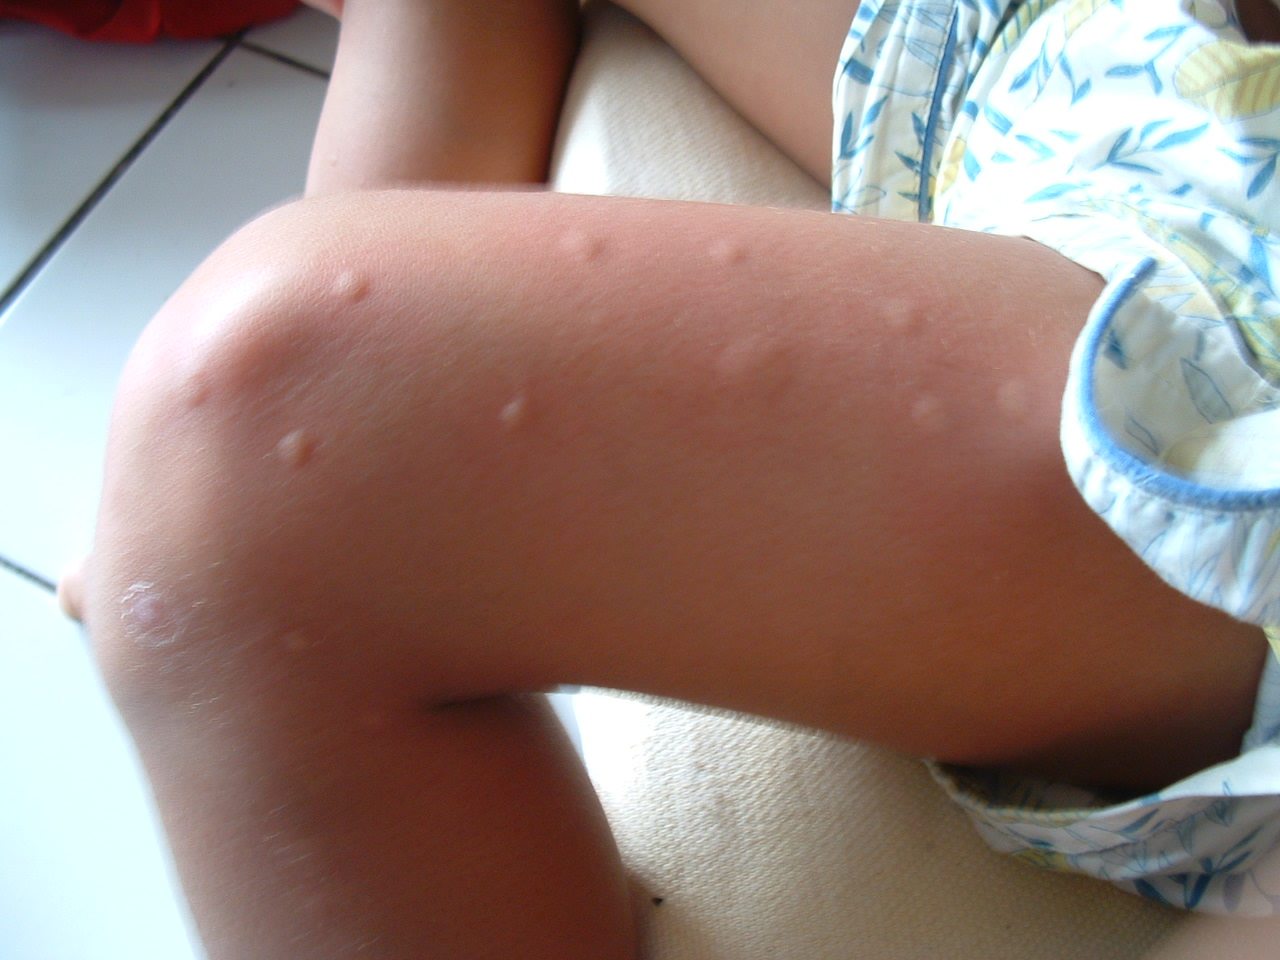 mosquito bite photo